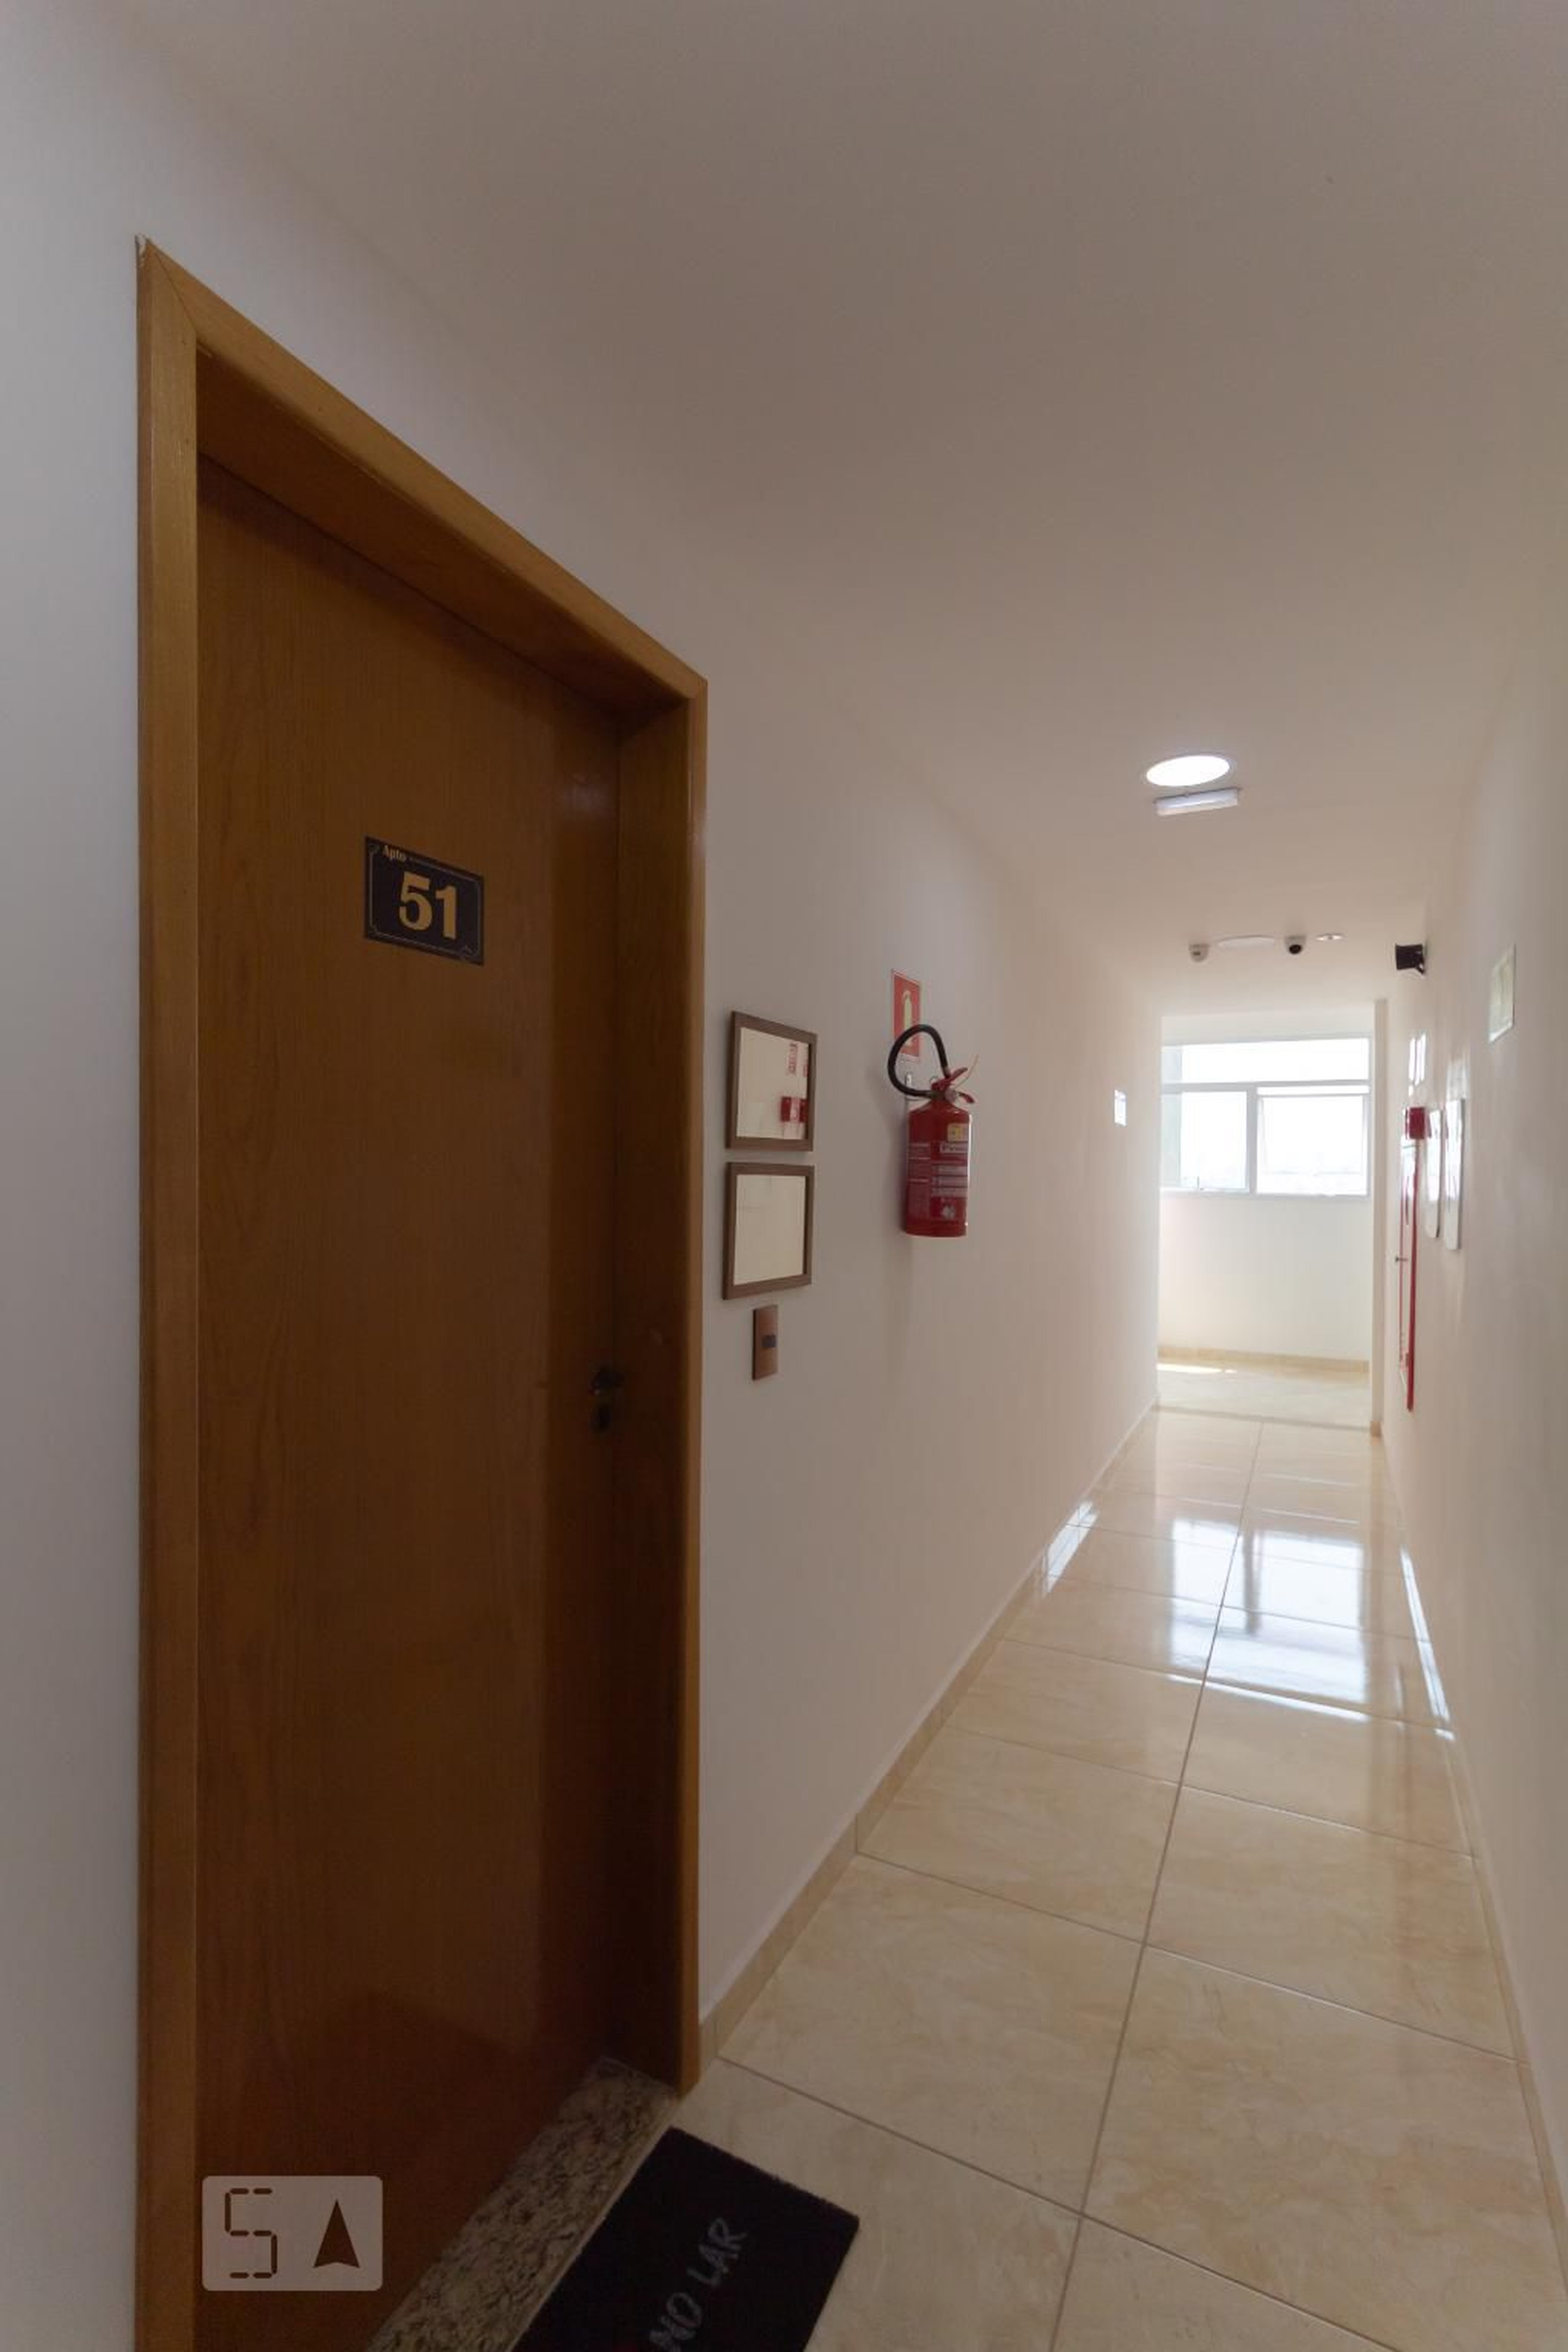 Hall de Entrada - Residencial Manuela